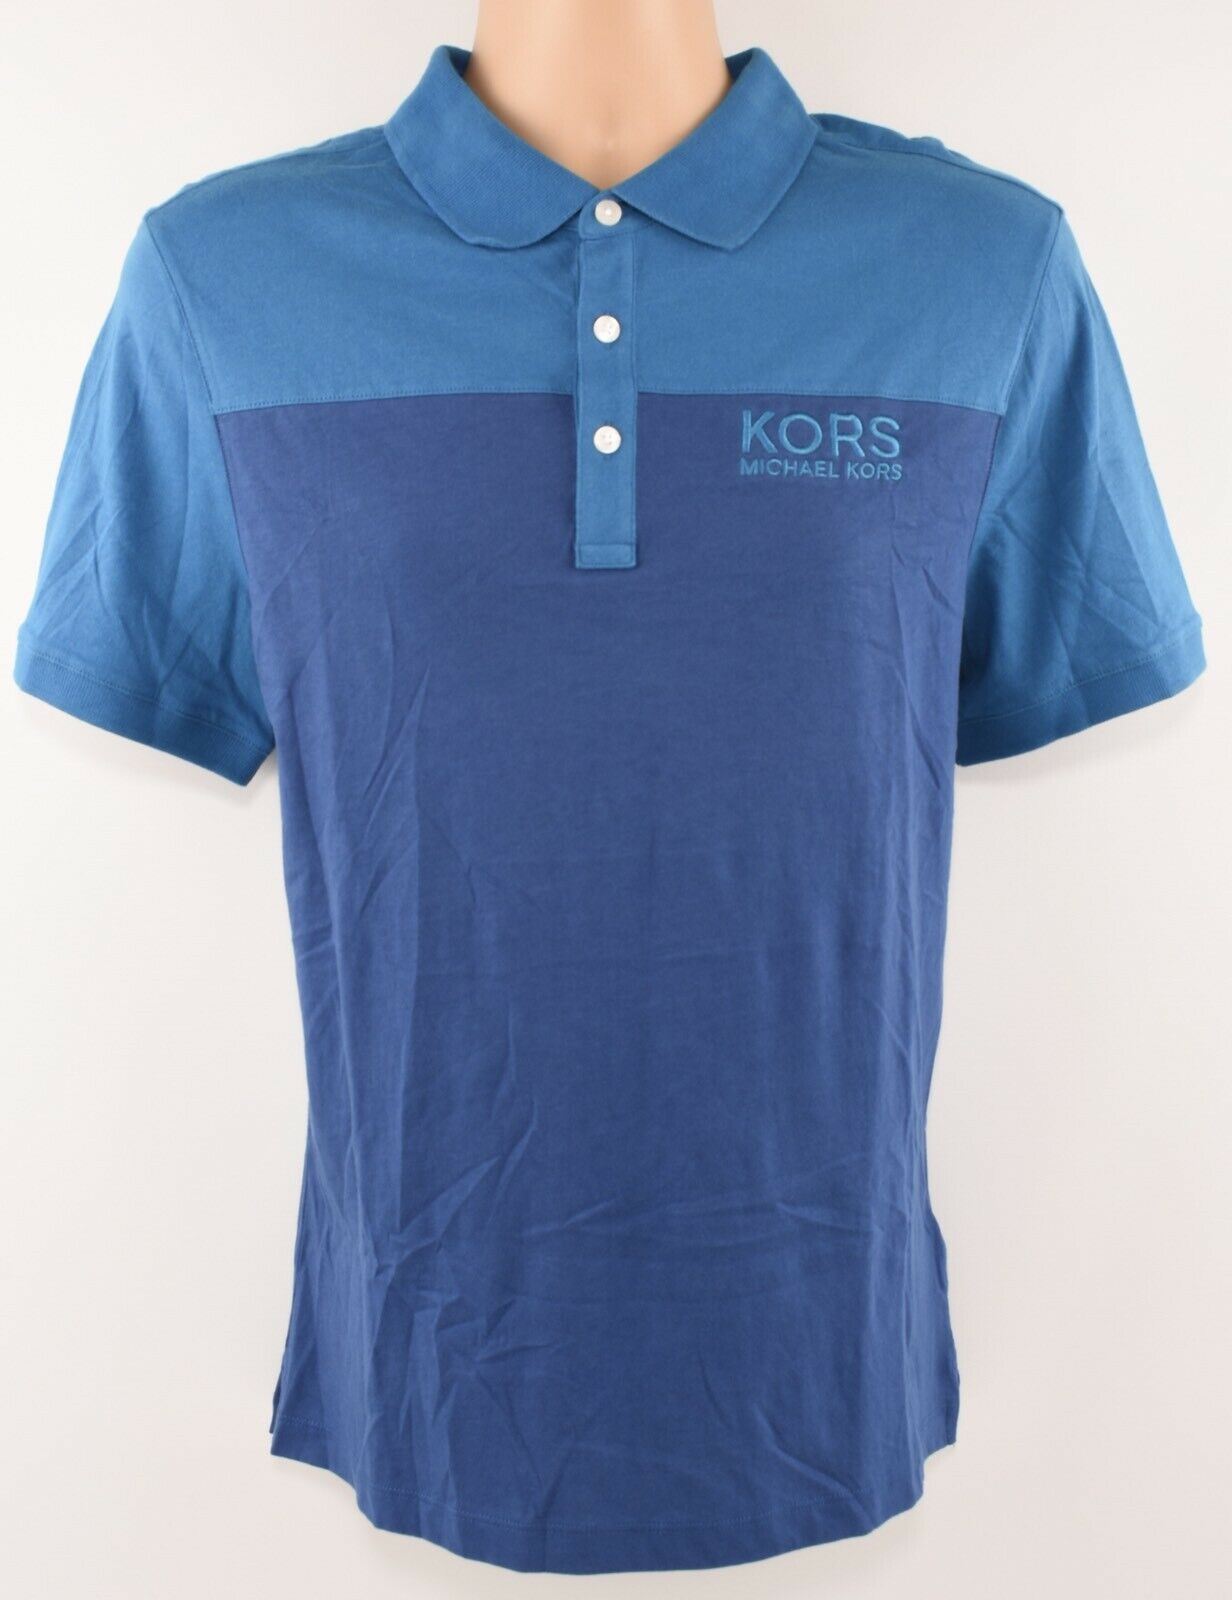 MICHAEL KORS Men's Colourblocked Polo Shirt, Marine Blue, size M /size L